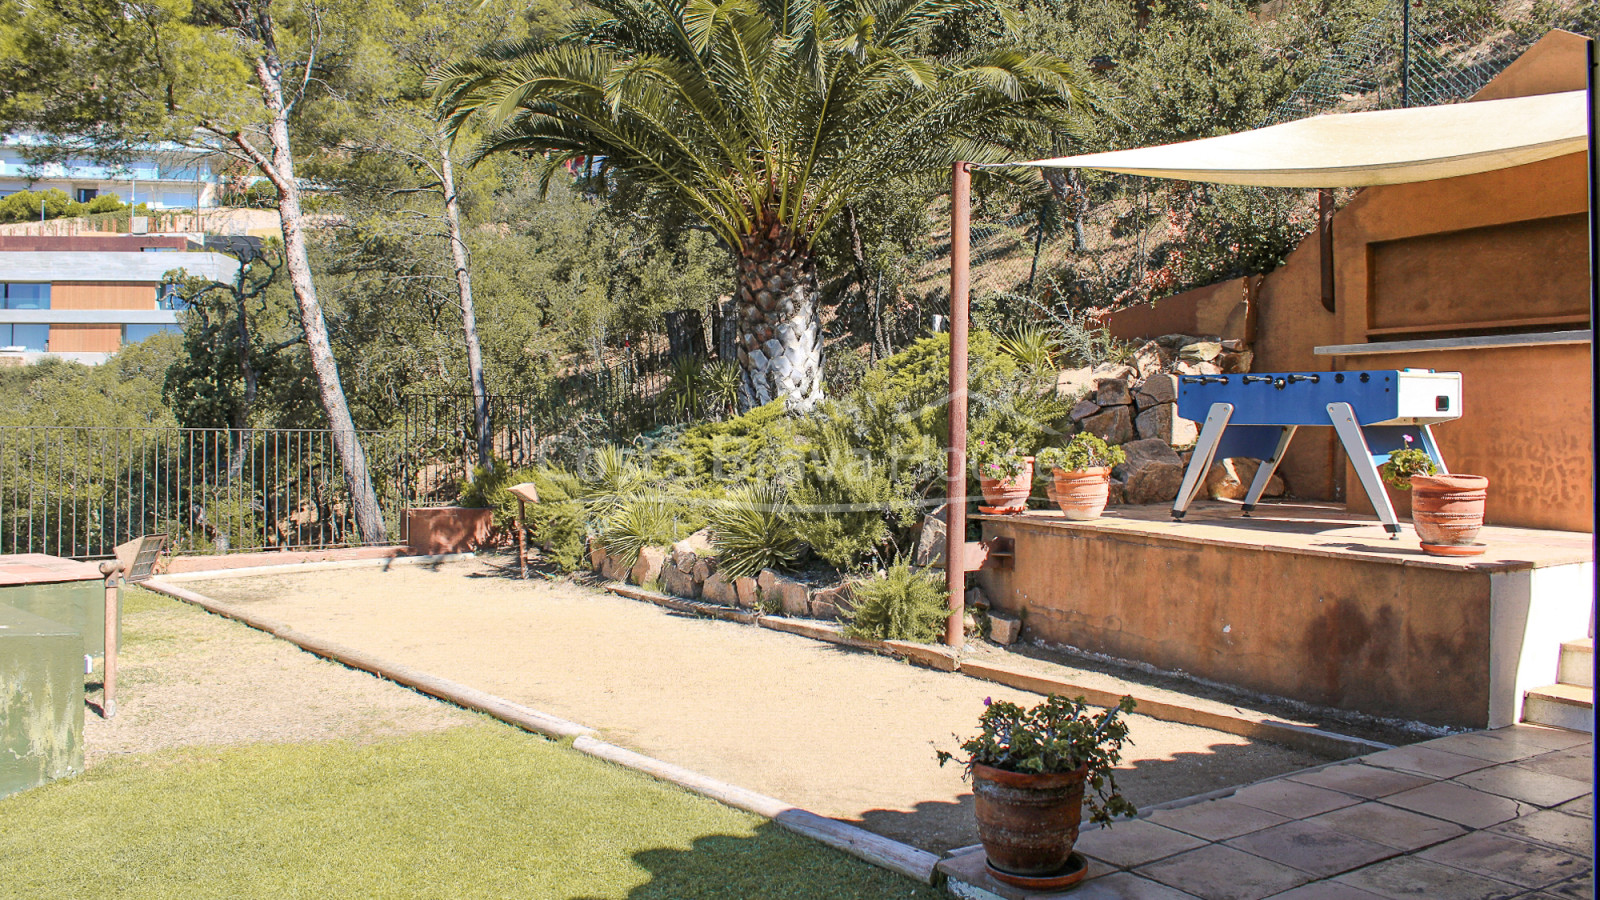 Elegant vila amb piscina a Begur Ses Costes Aiguablava